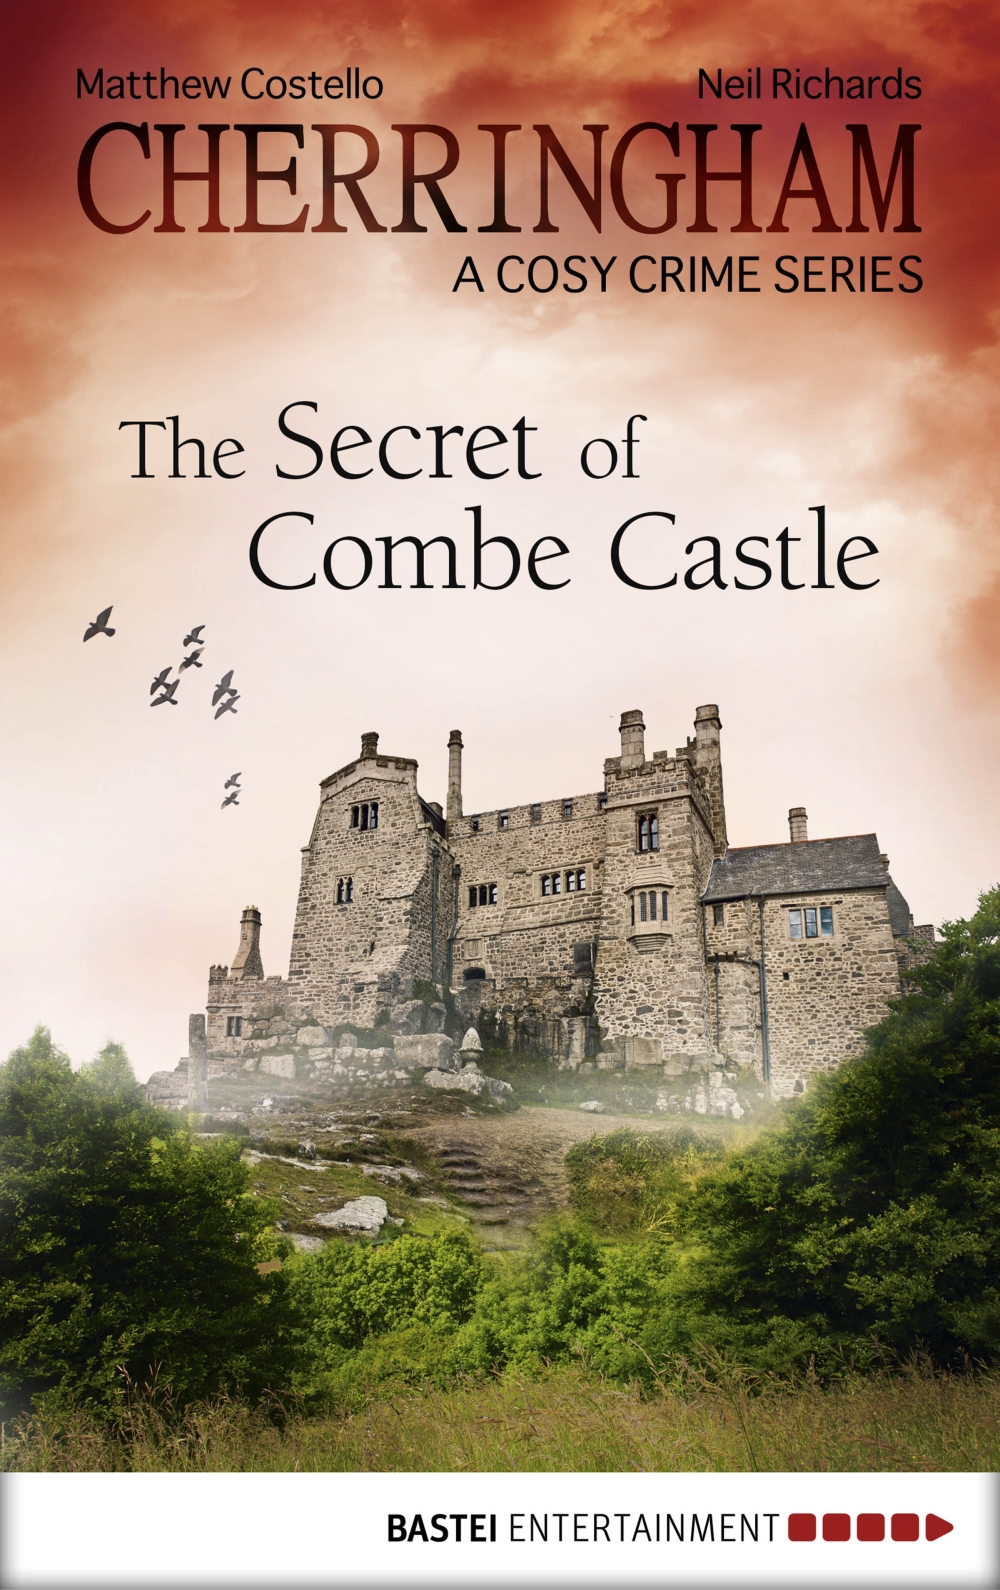 Cherringham--The Secret of Combe Castle (2015)